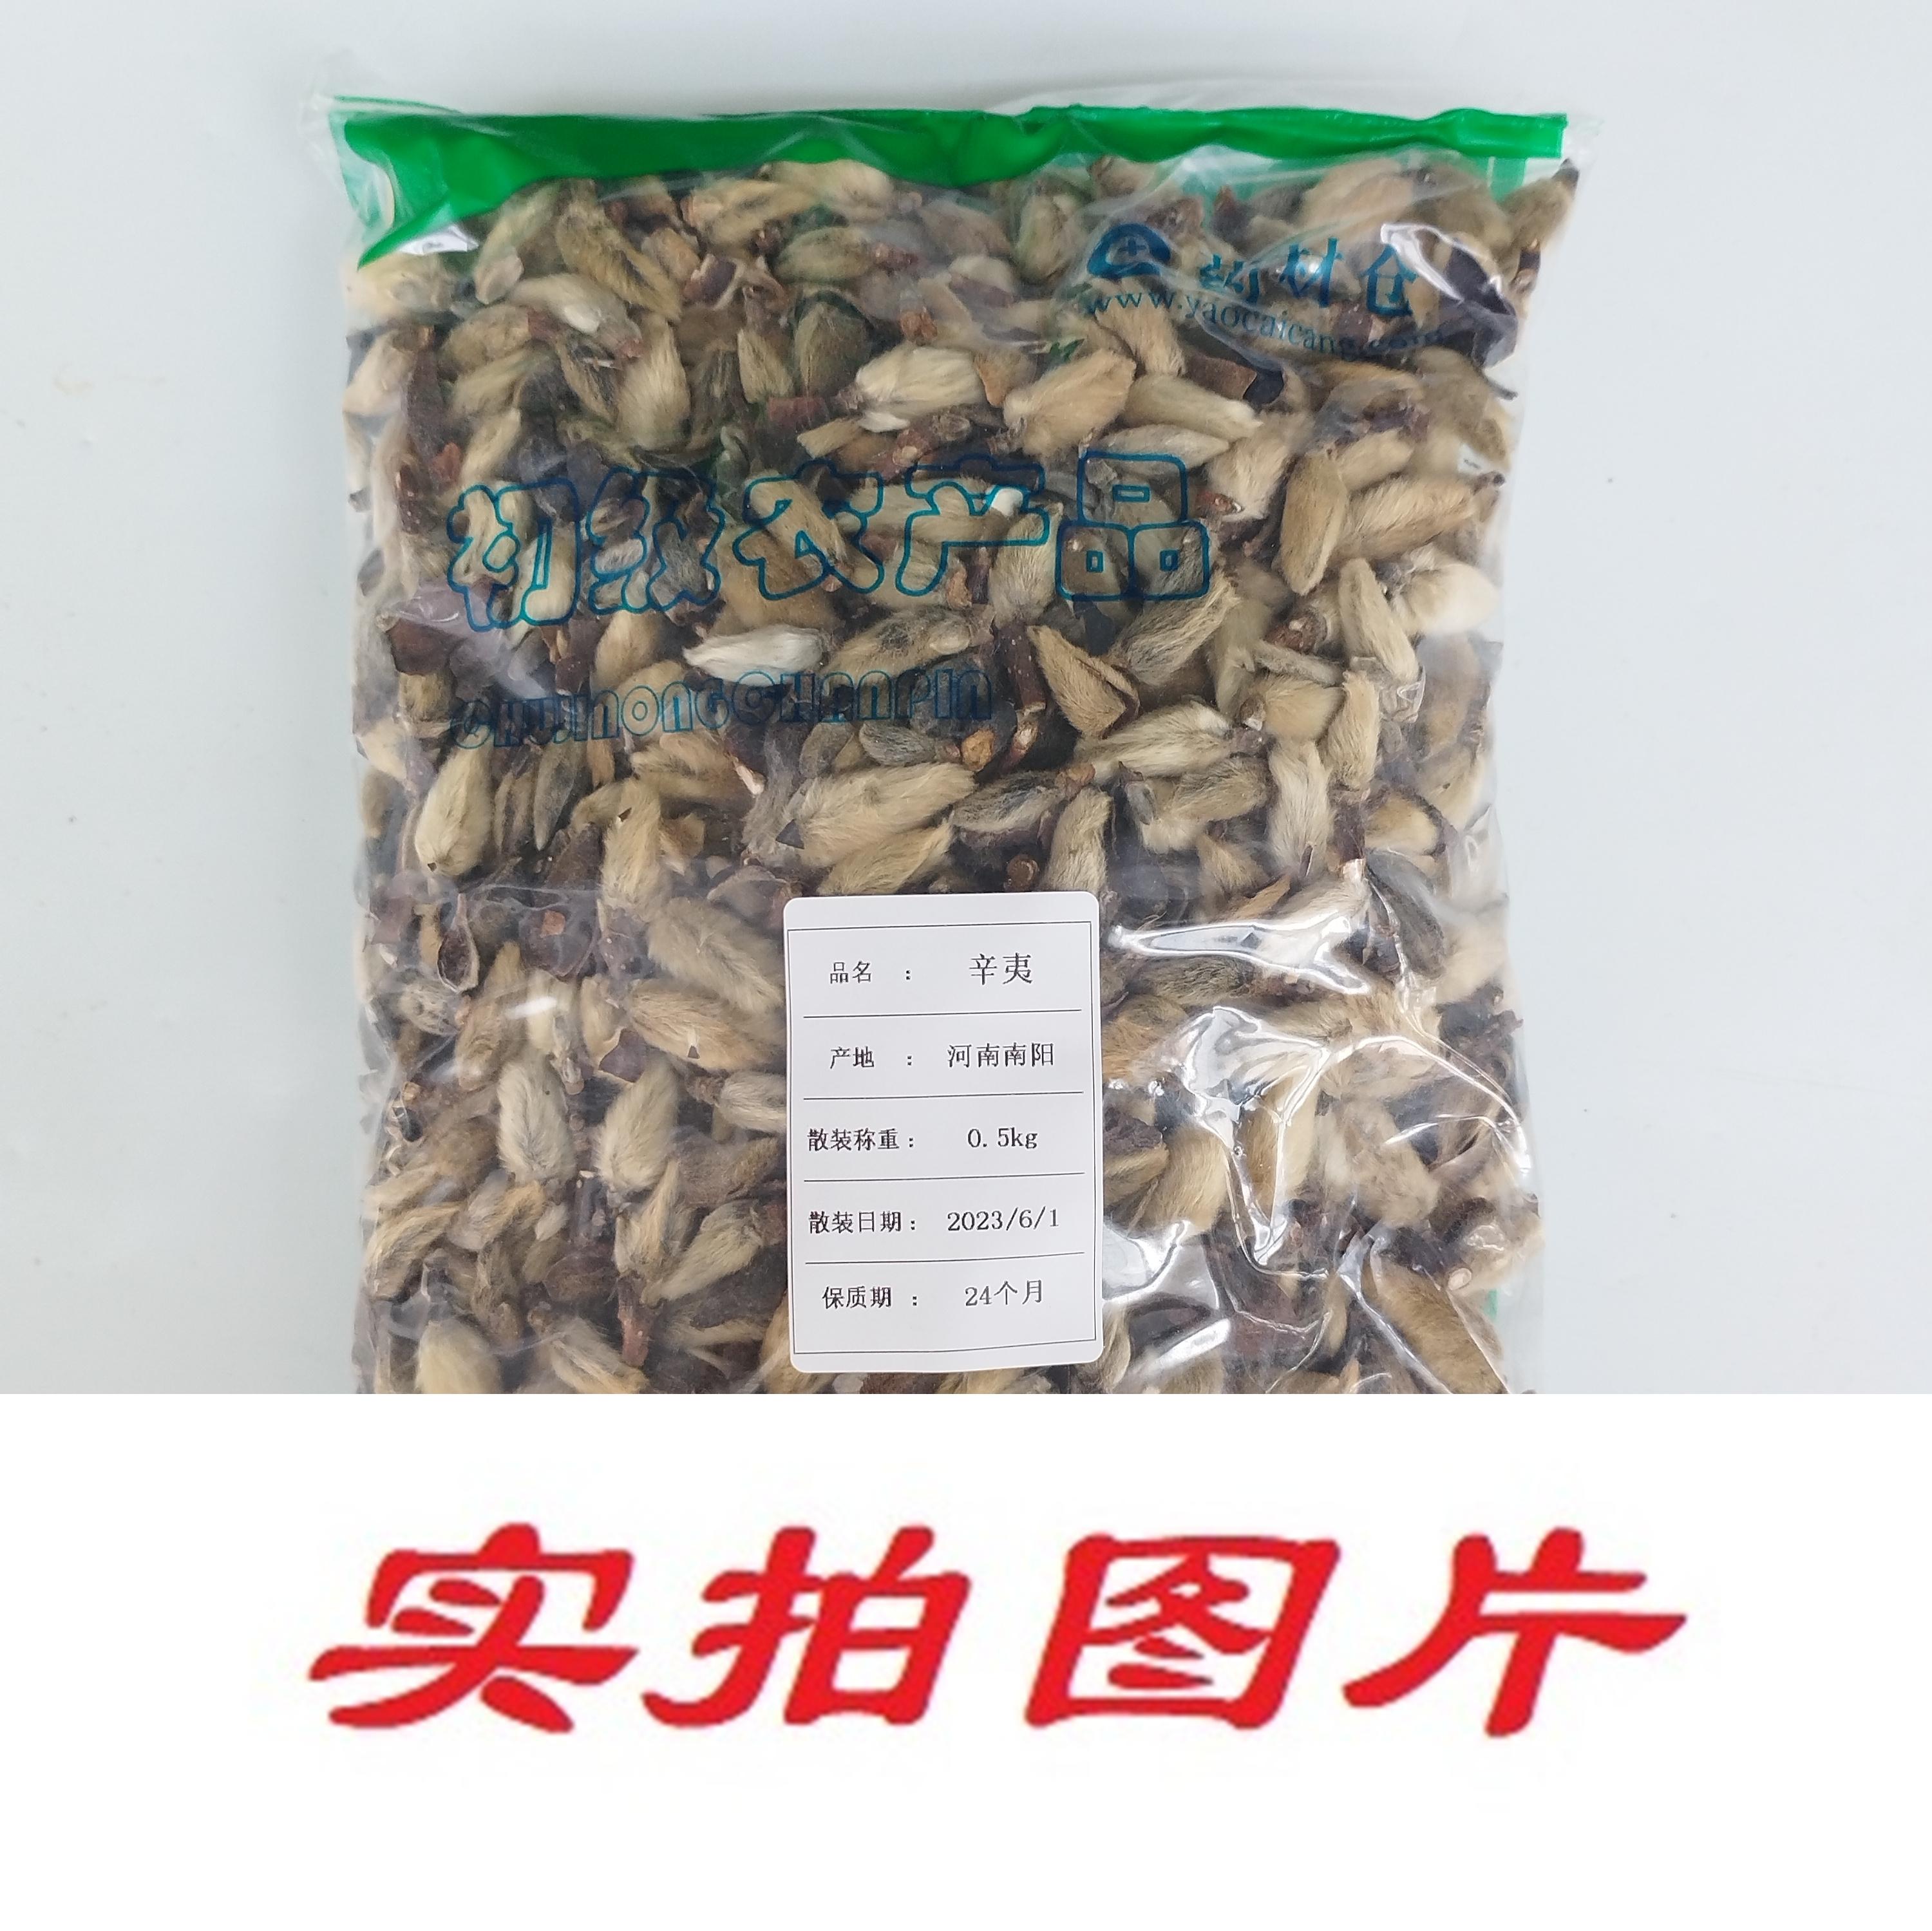 【】辛夷0.5kg-农副产品